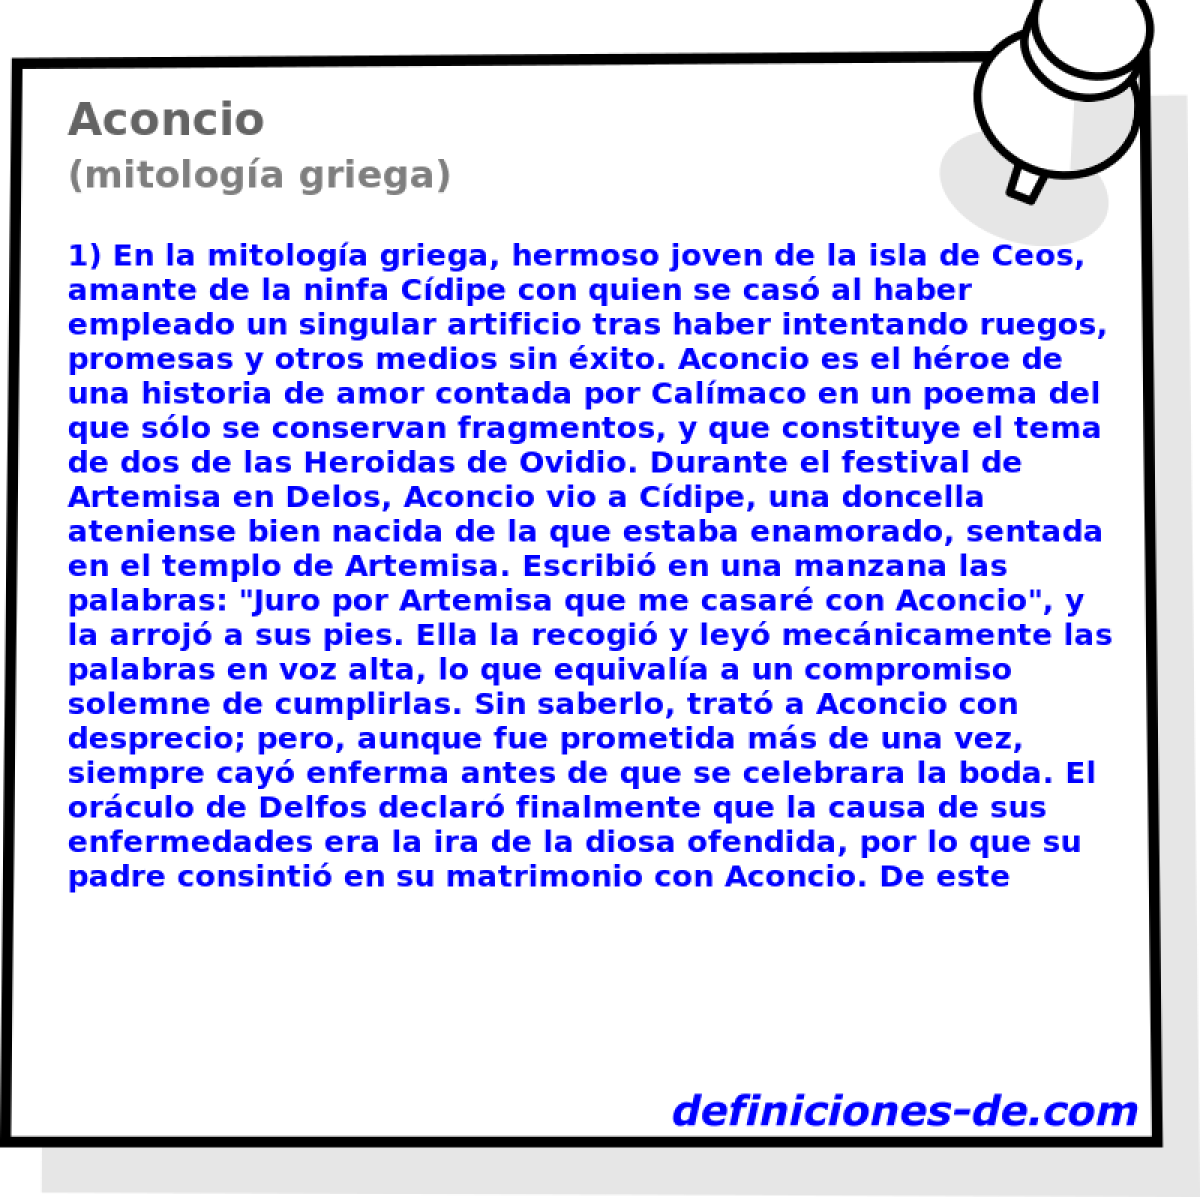 Aconcio (mitologa griega)